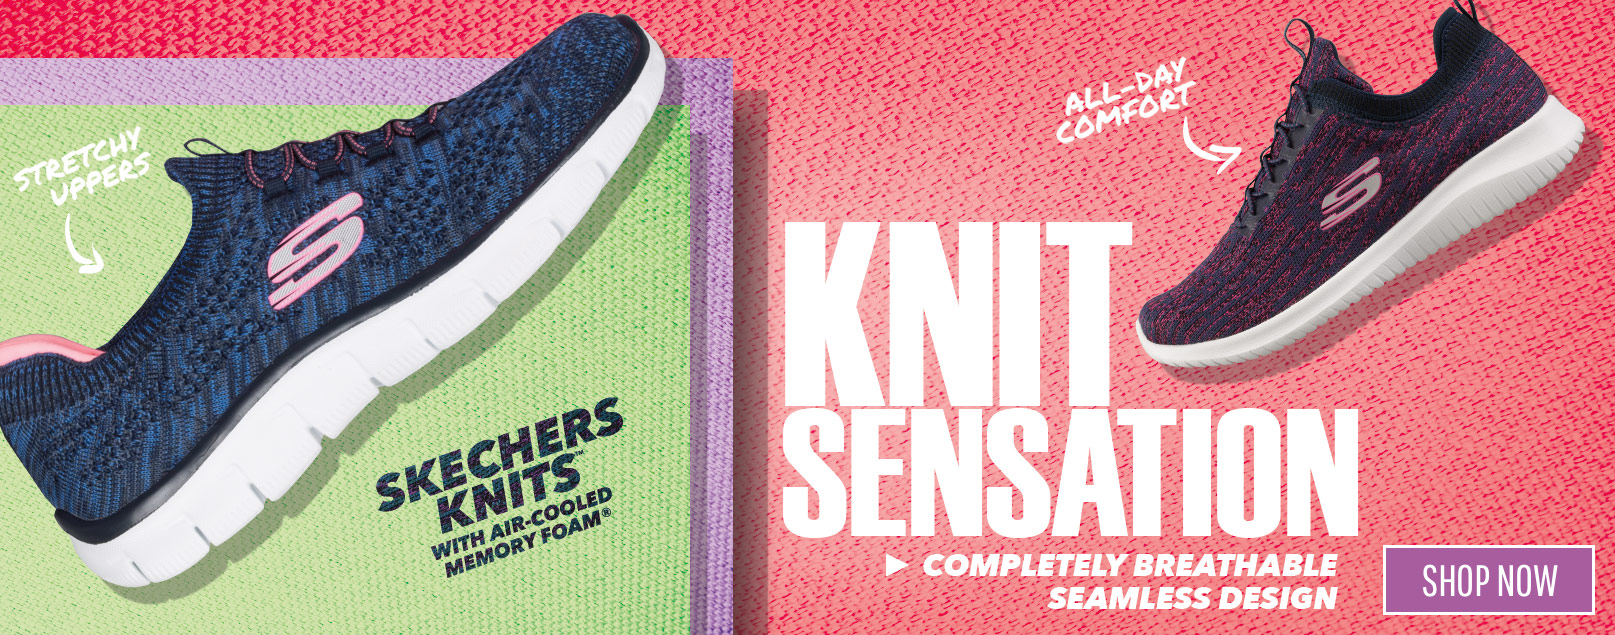 stretch knit skechers for women